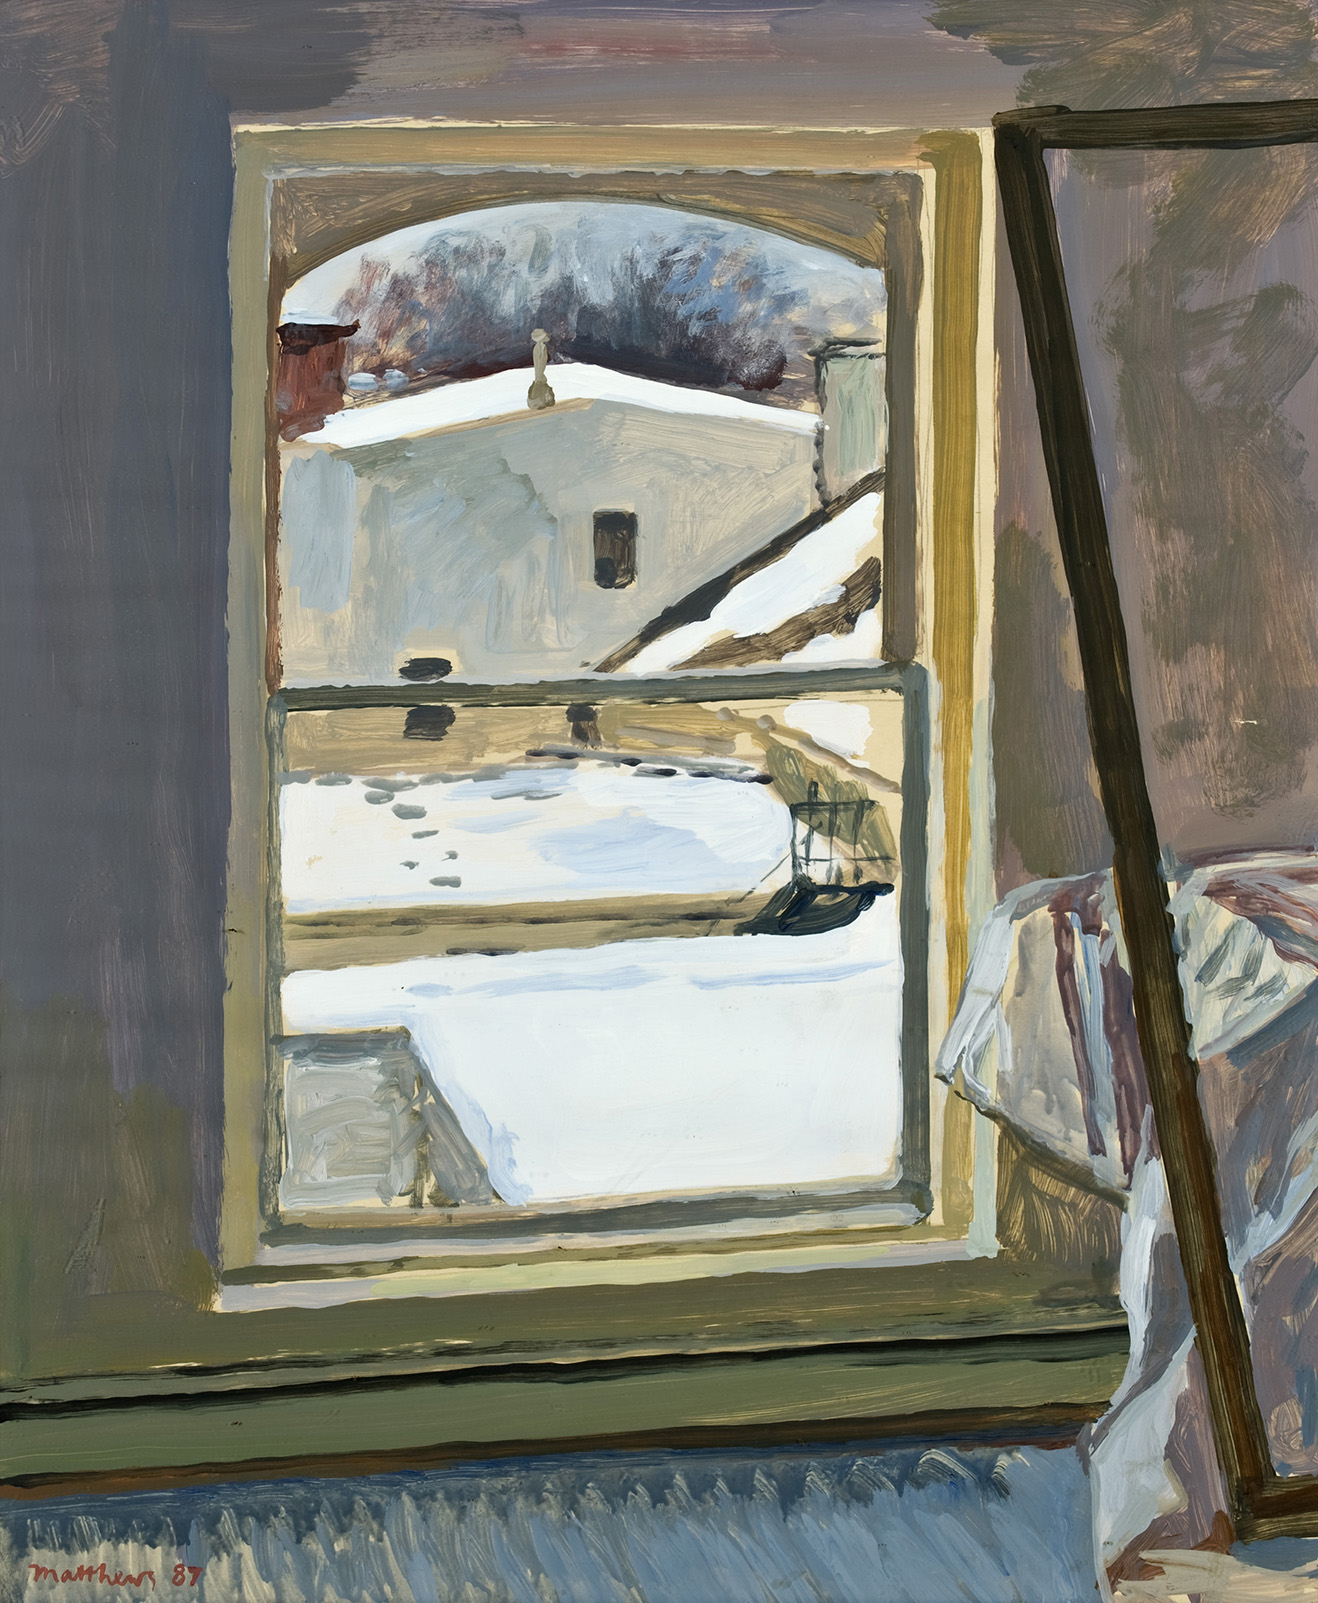  Winter Window; oil on board, 24 x 20